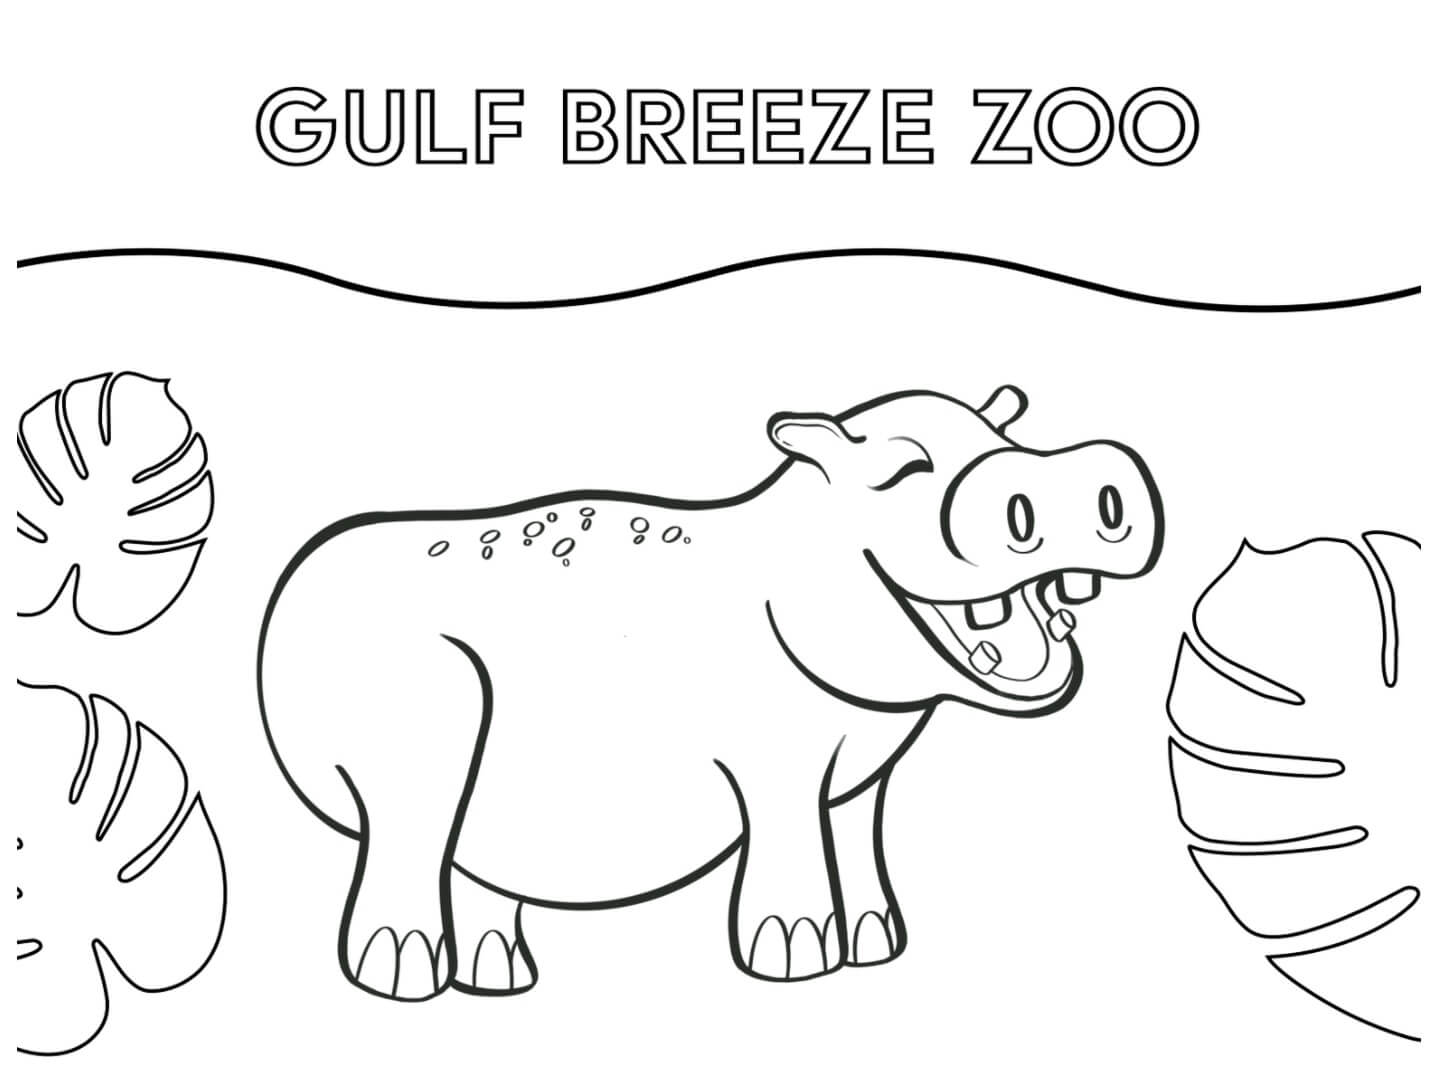 Zoológico Gulf Breeze